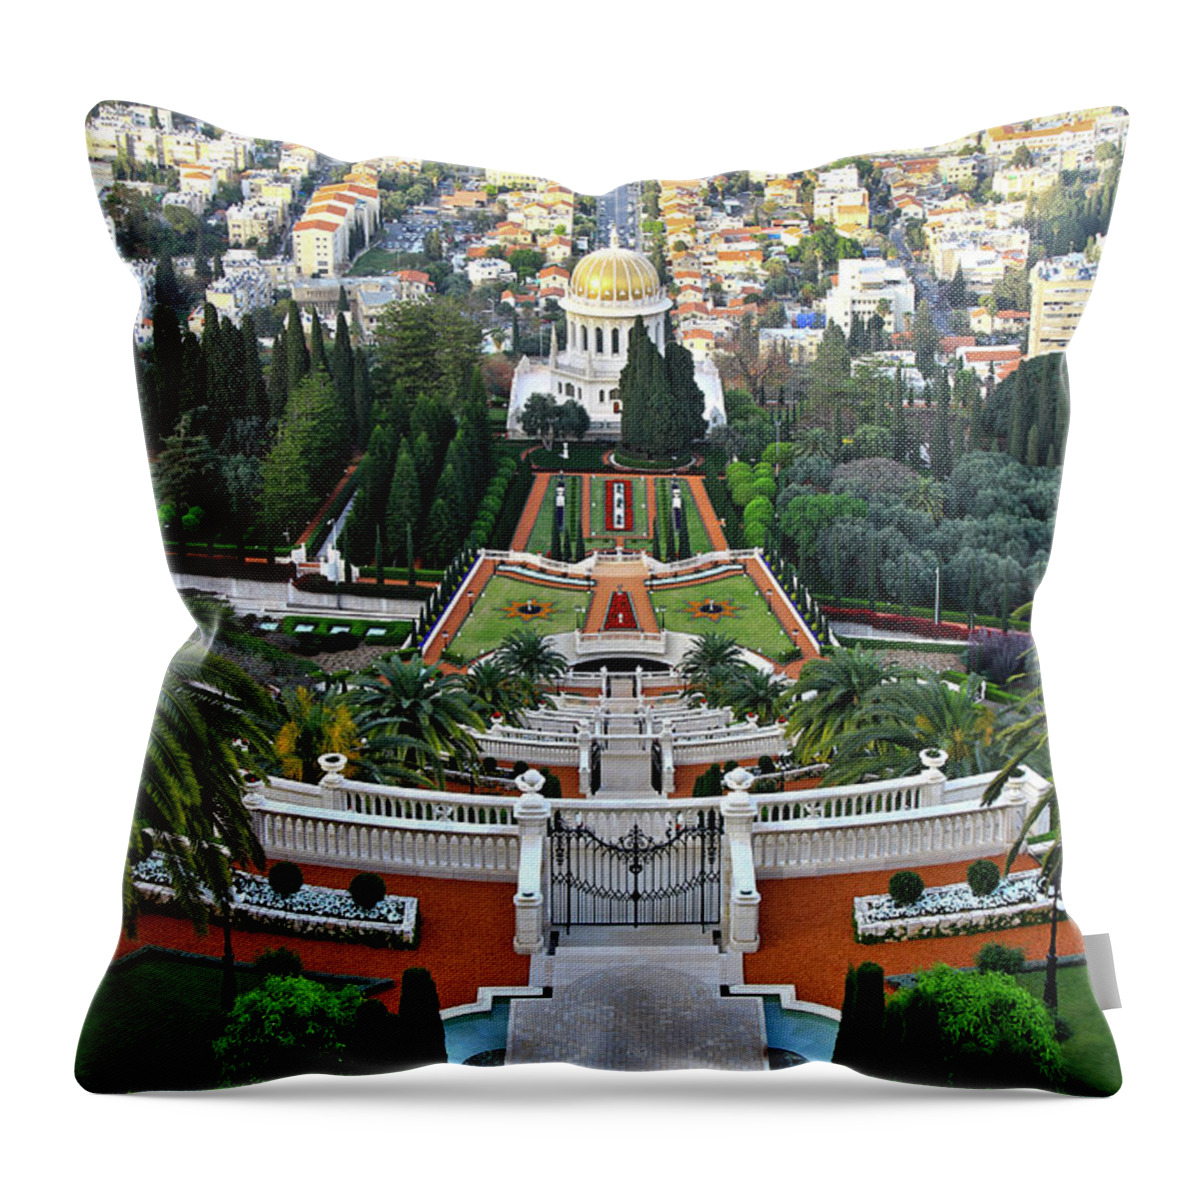 Haifa Throw Pillow featuring the photograph Bahai Gardens 3 - Haifa, Israel by Richard Krebs